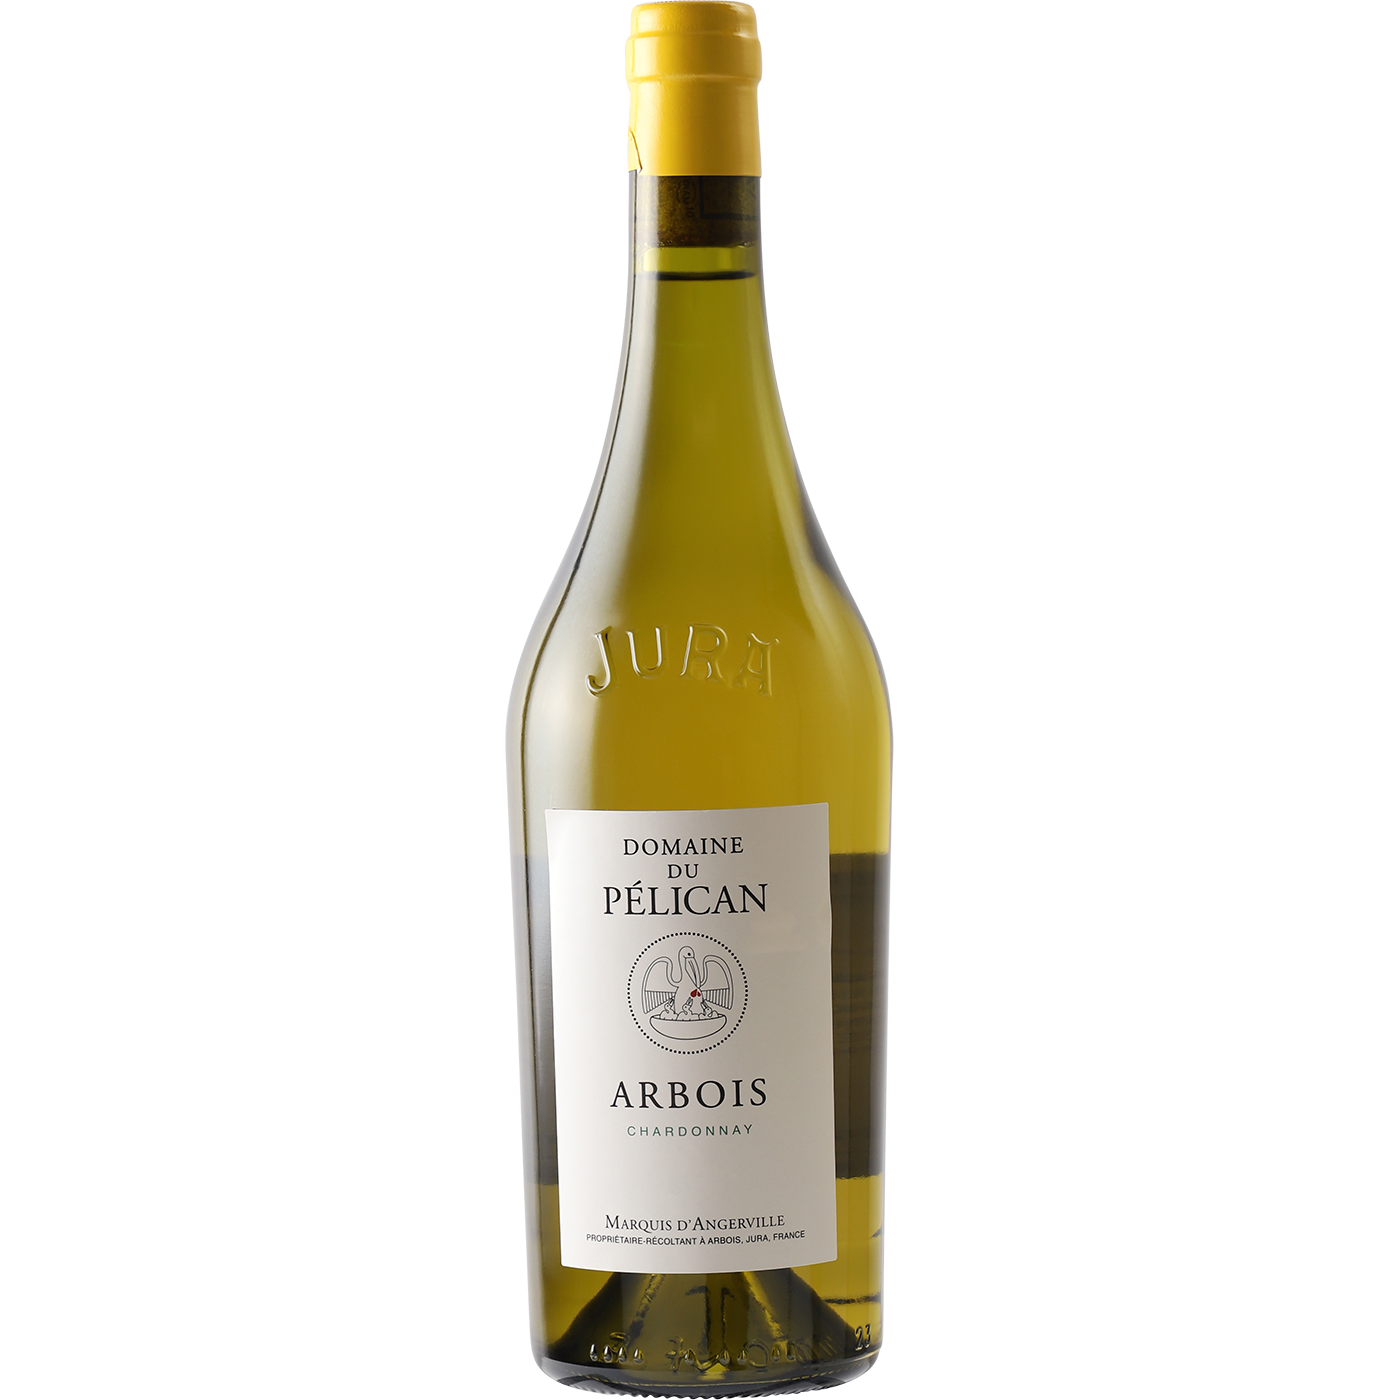 Domaine du Pelican Domaine Du Pelican Arbois Chardonnay 2018